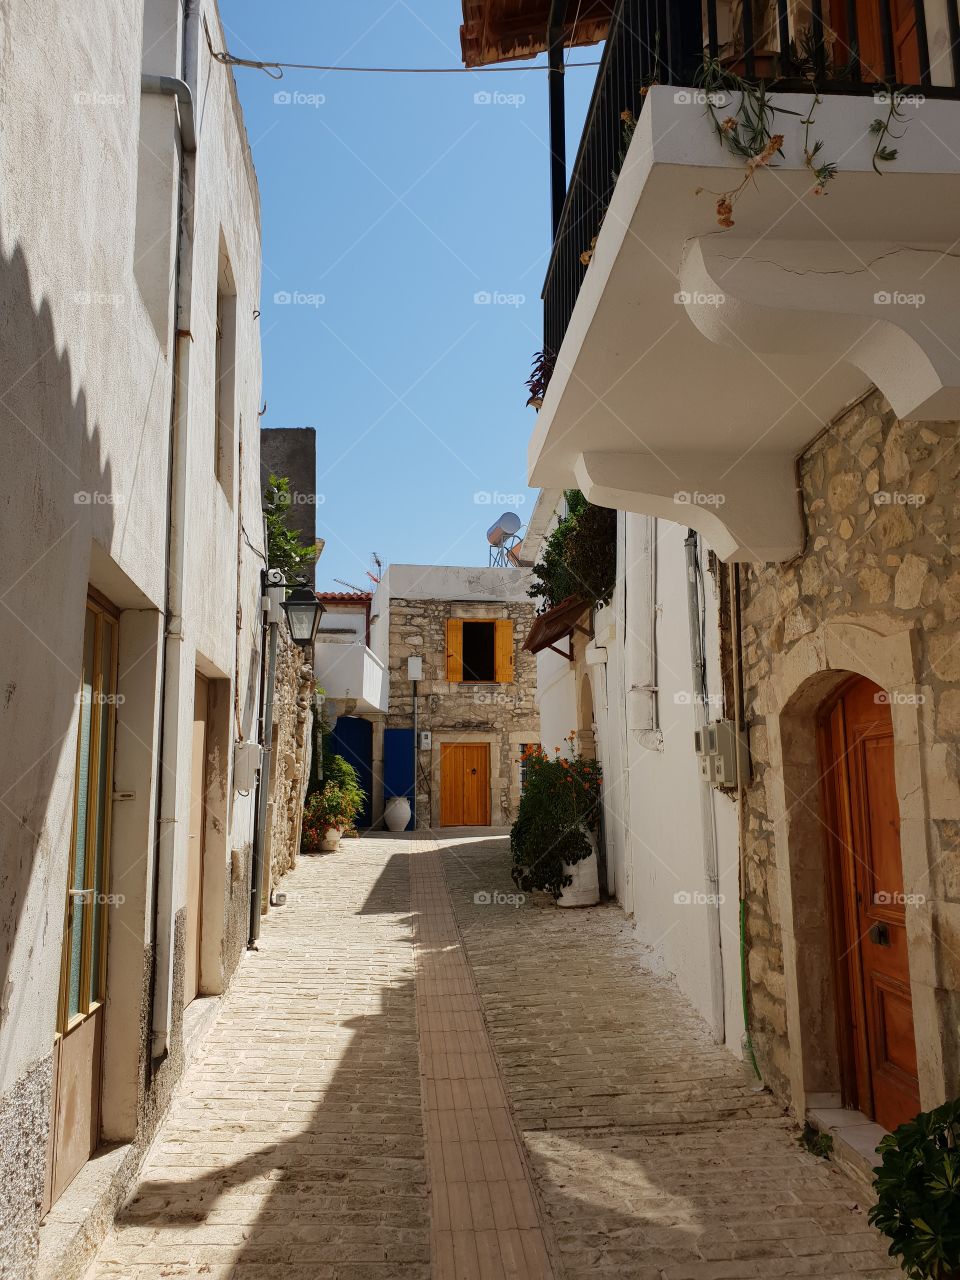 small street in a village in crete